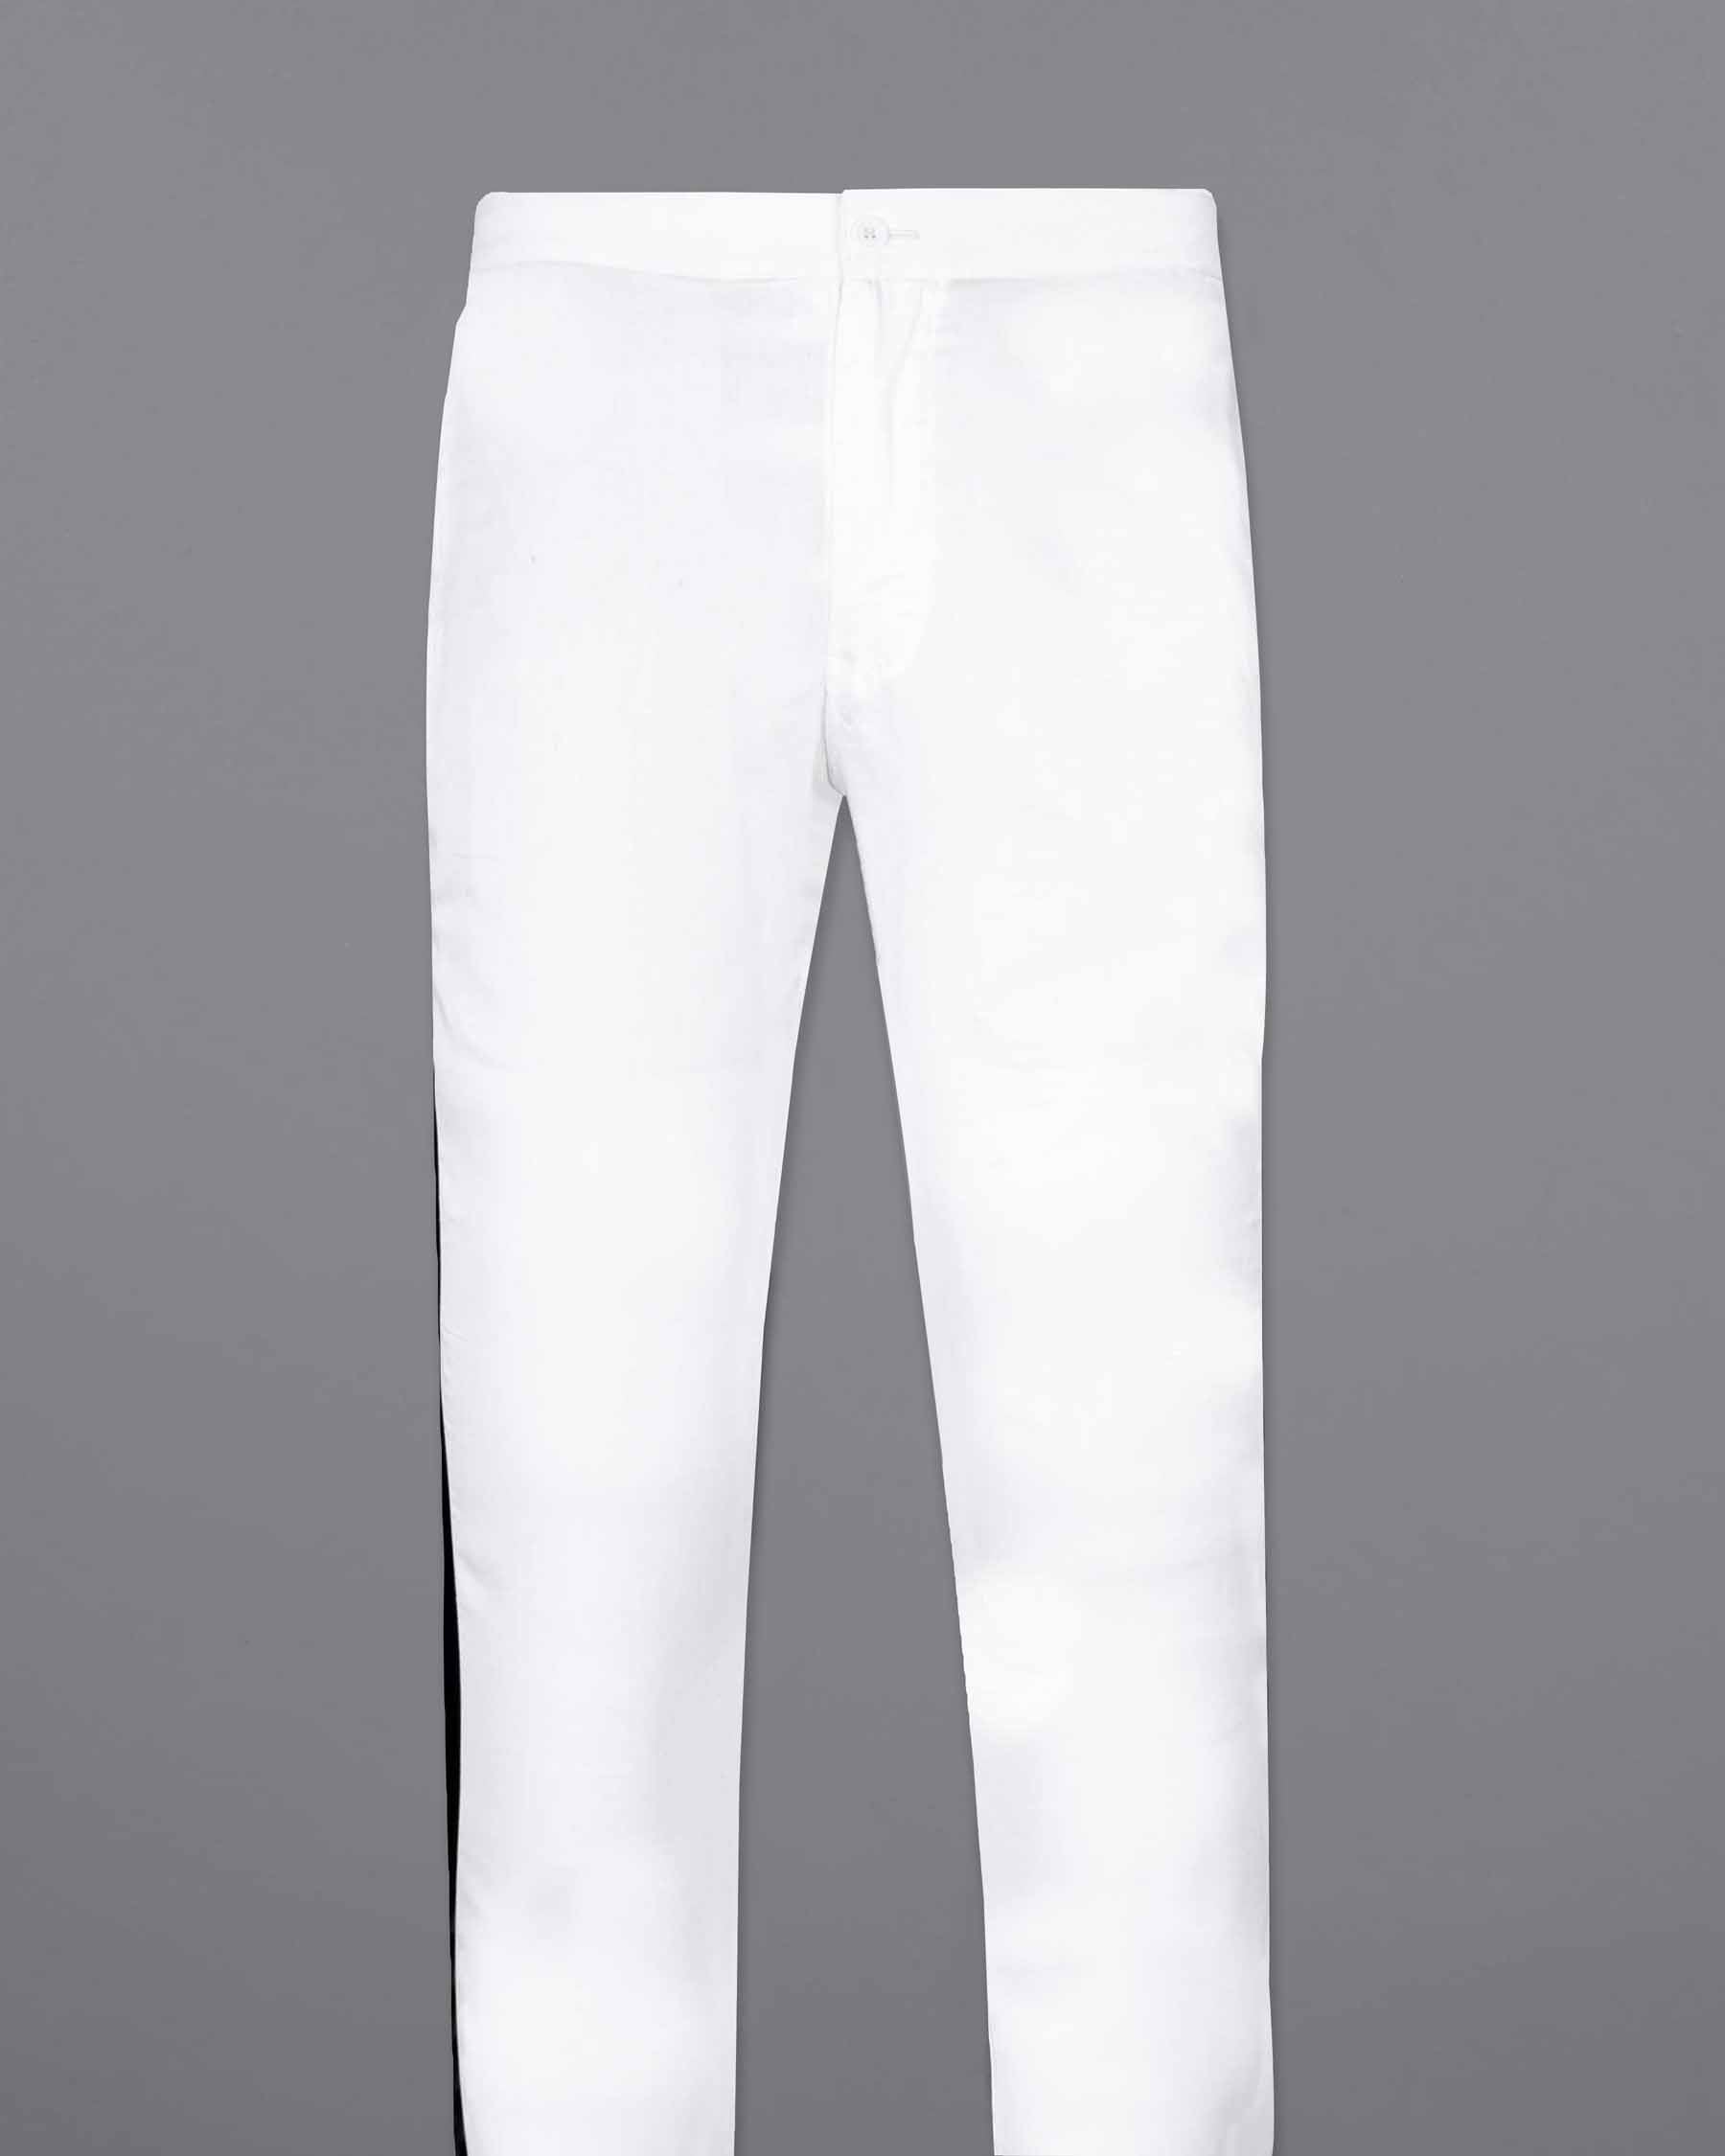 Katharine Hamnett Denim Jeans Vintage High End Designer White Trousers VTG  - Etsy